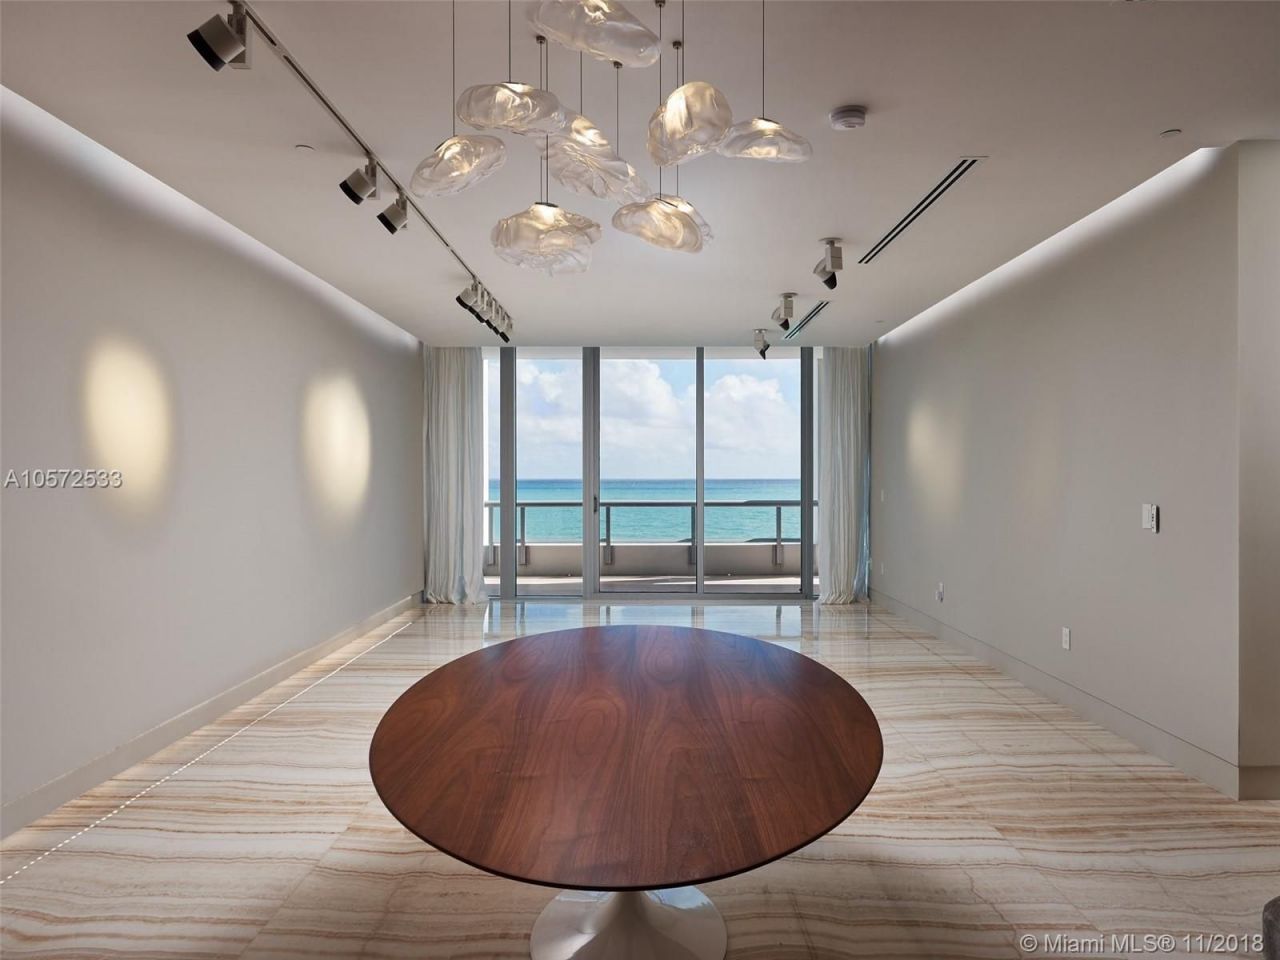 Appartement à Miami, États-Unis, 200 m2 - image 1